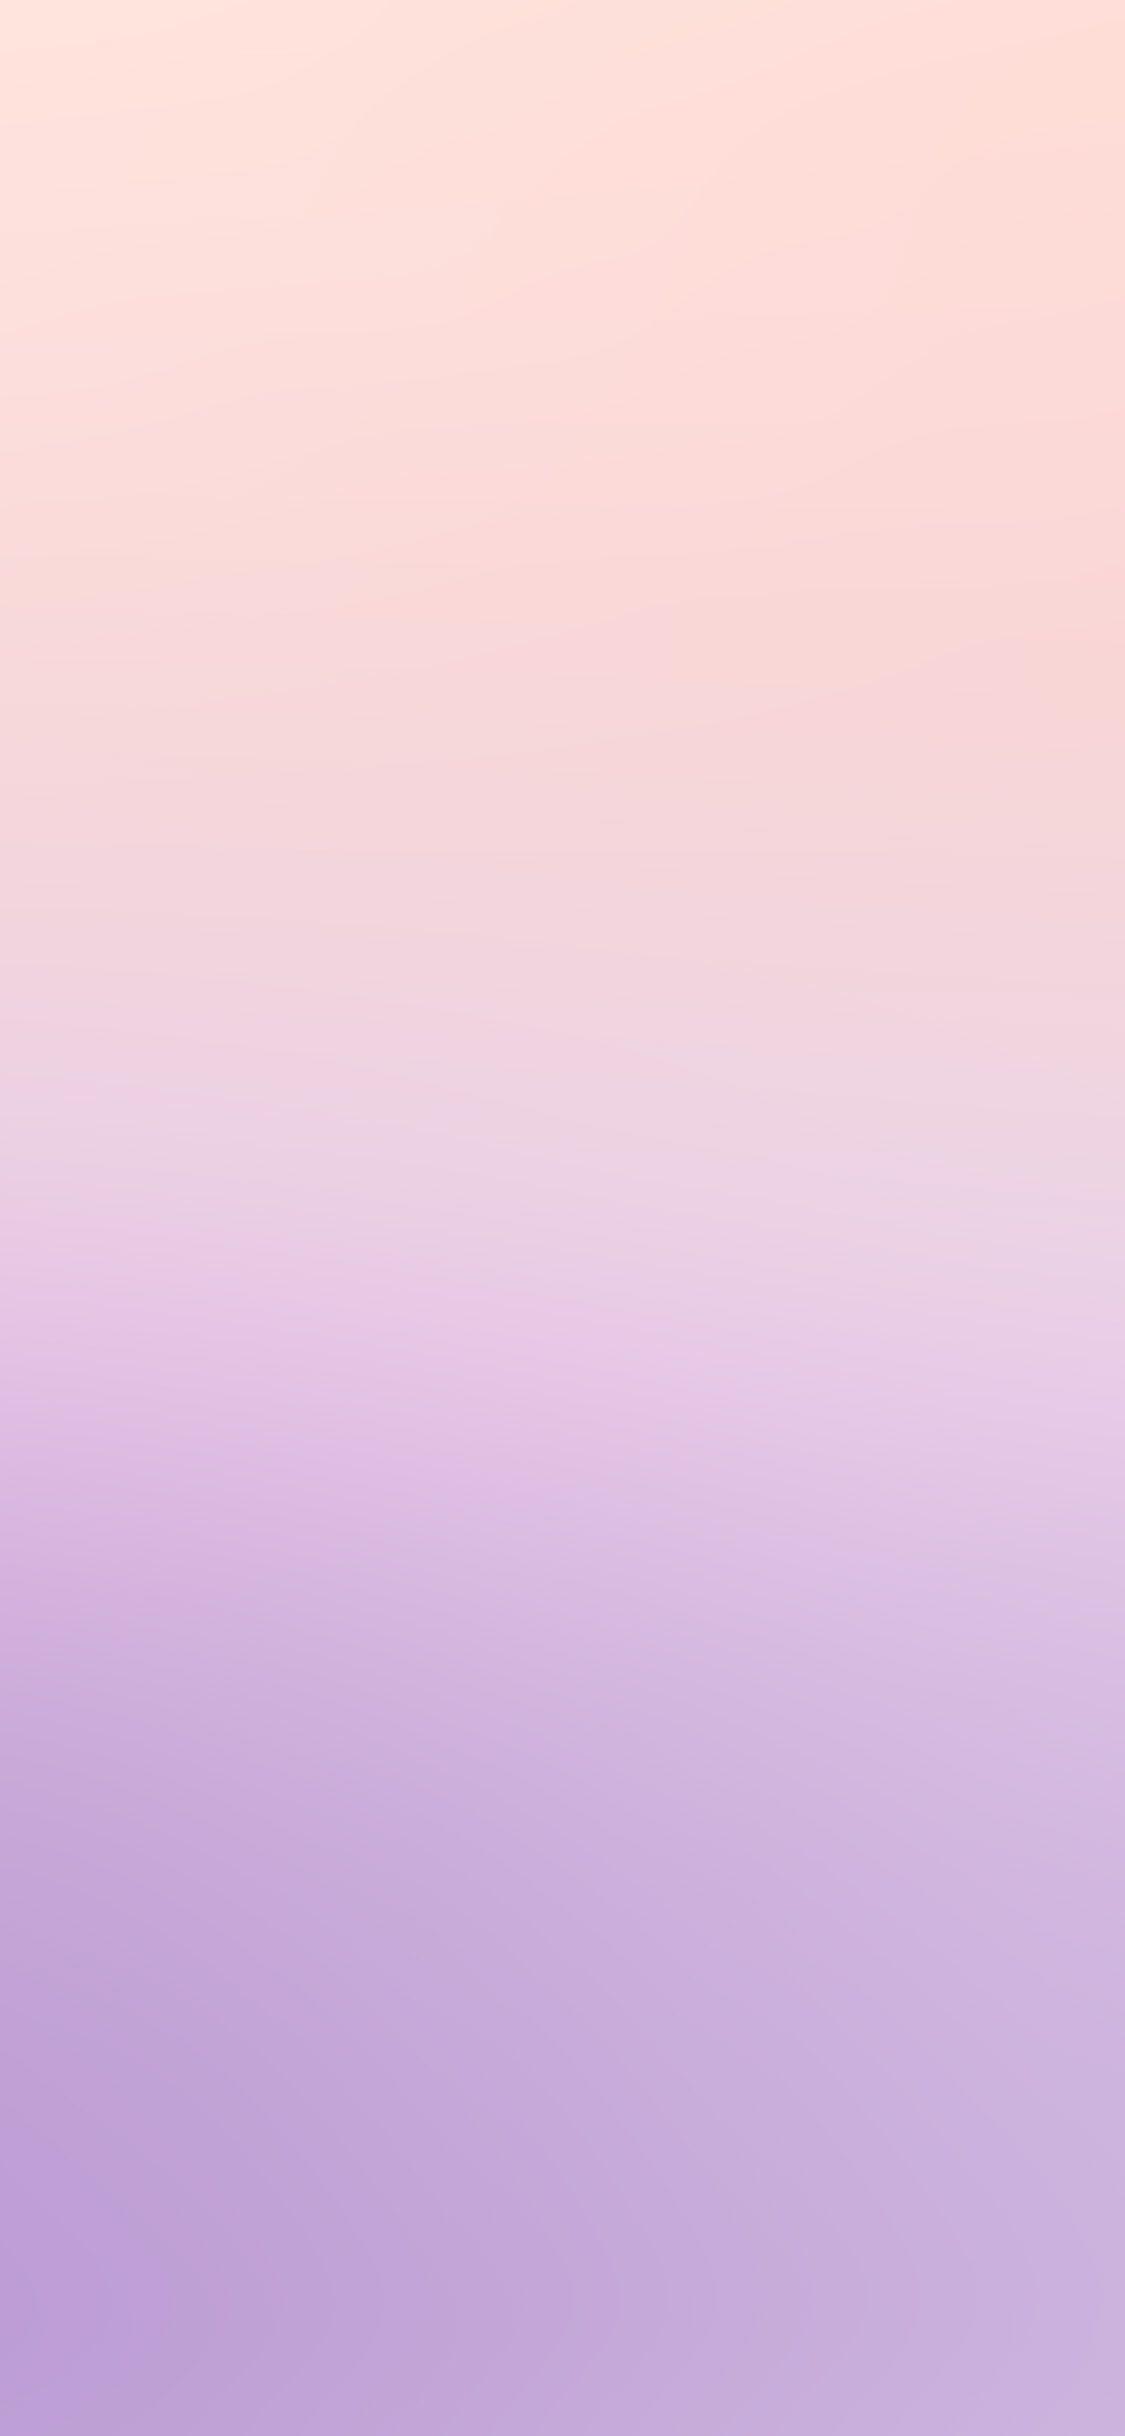 Hình nền iPhone X 1125x2436.  chuyển màu mờ nhạt màu tím nhạt